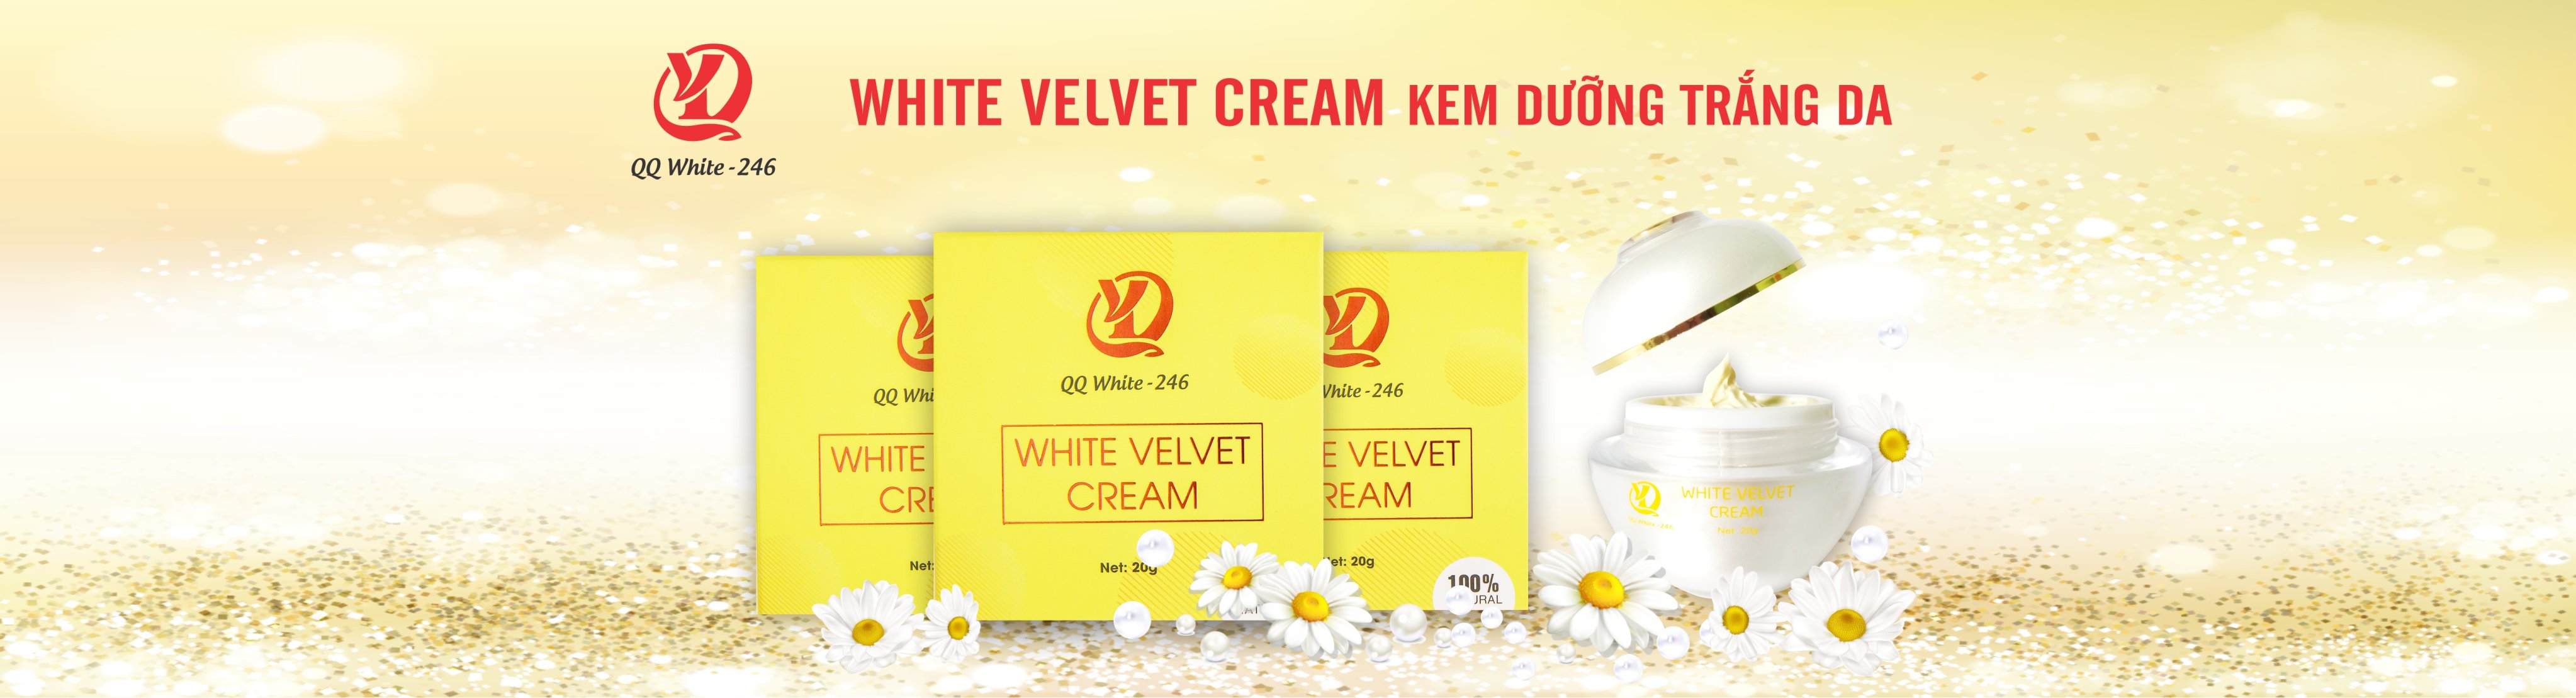 white-velvet-cream2